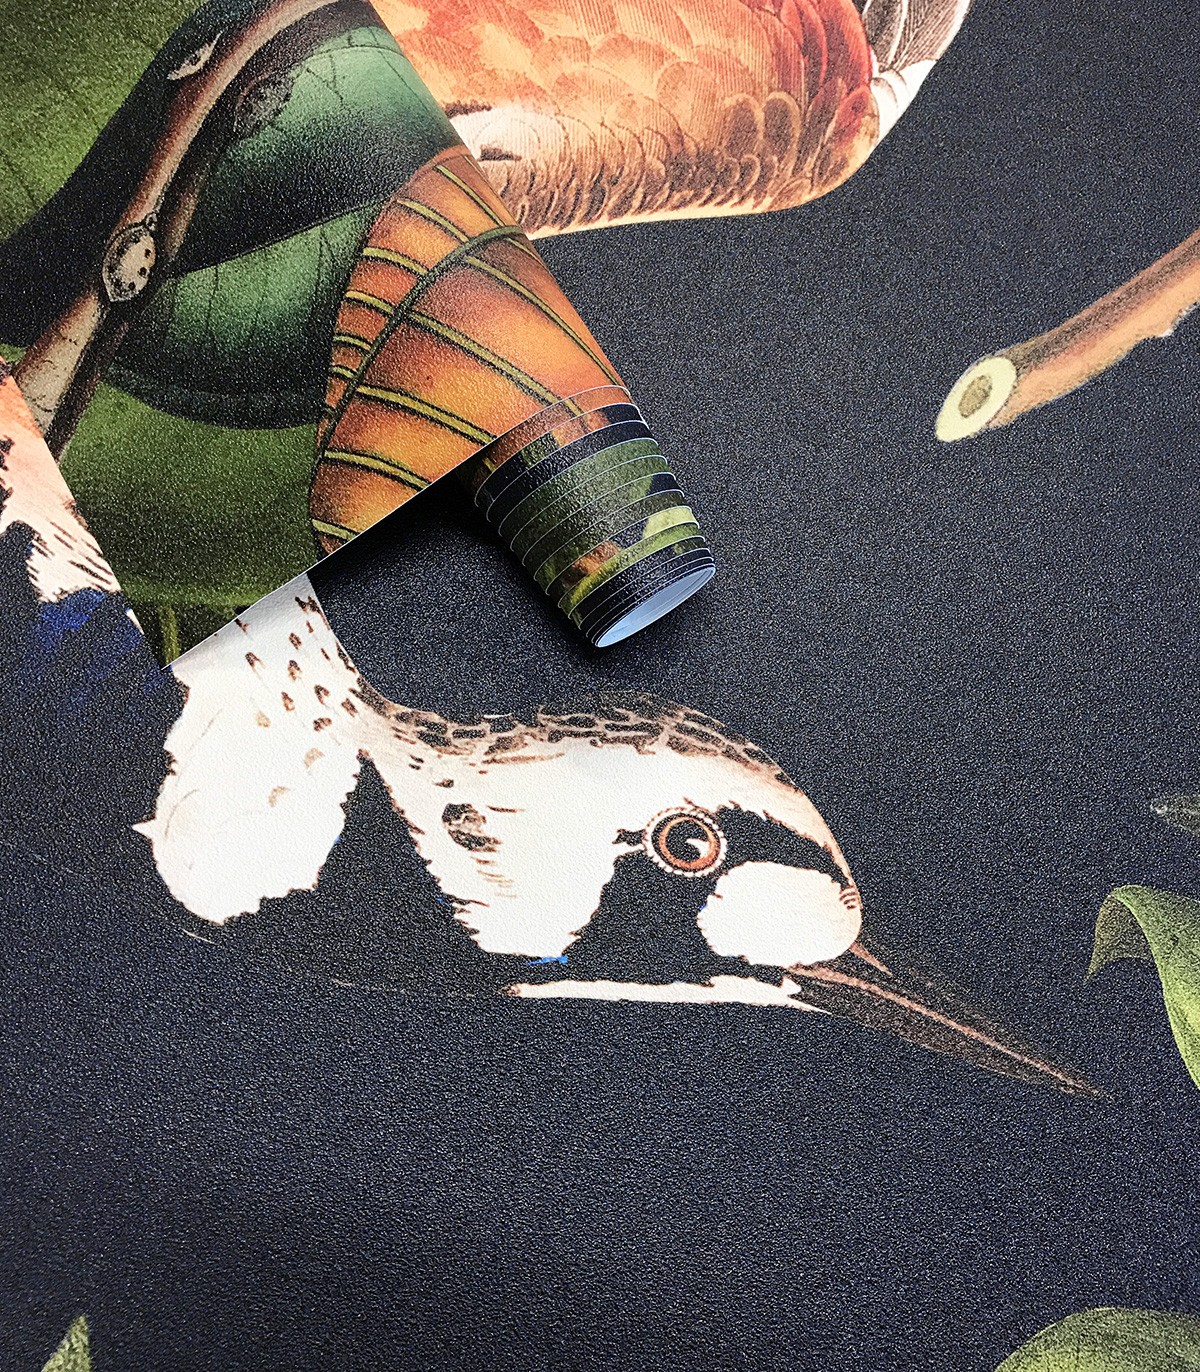 Orange bird wallpaper - Wallcolors  - Exclusive Wallpapers